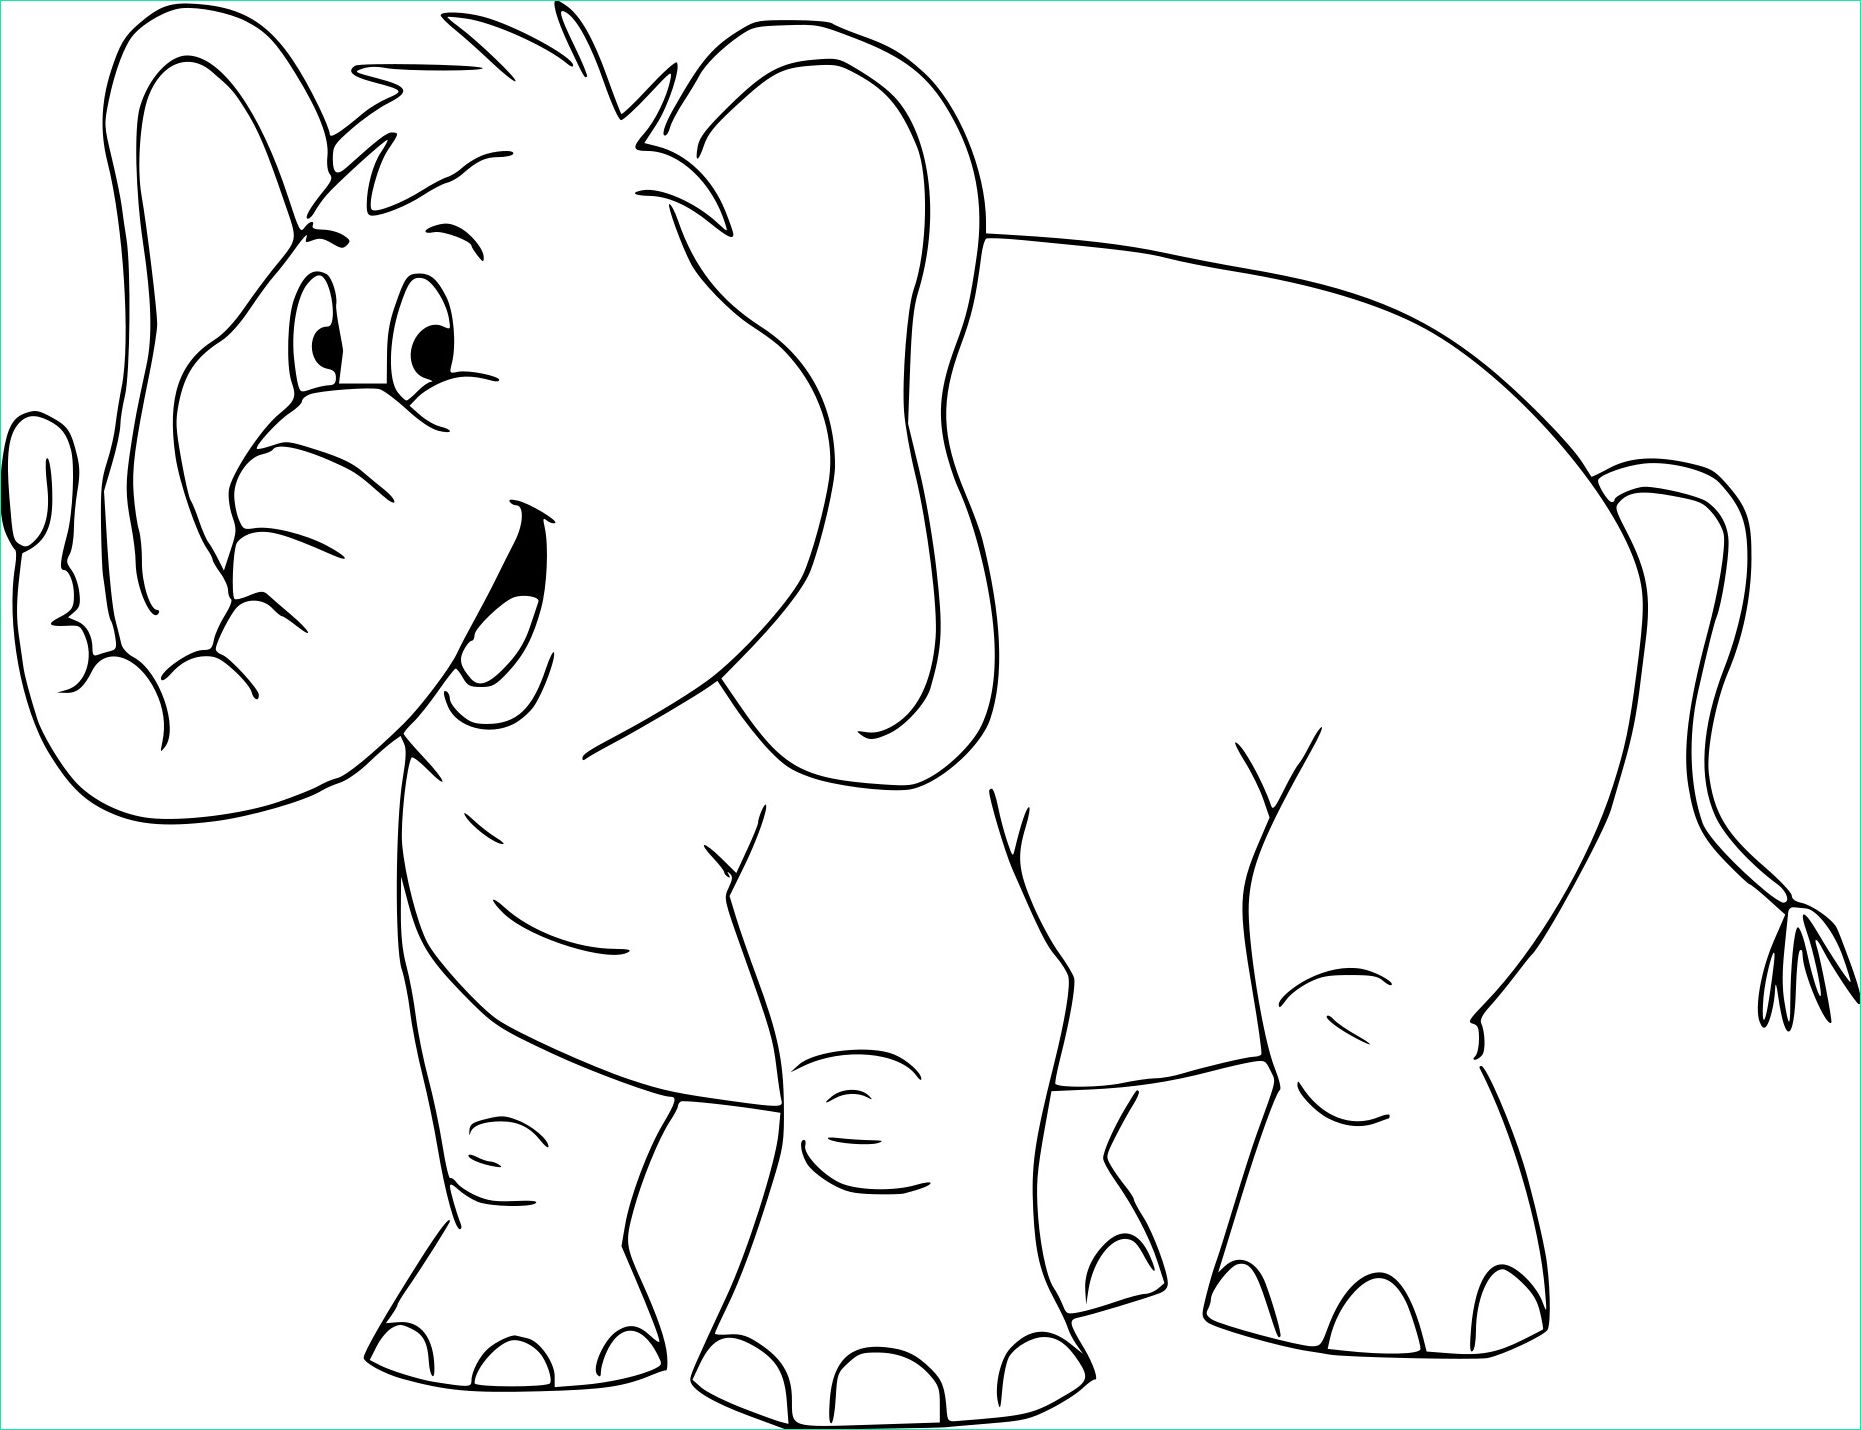 éléphant Coloriage Nouveau Galerie Coloriage Elephant Rigolo à Imprimer Sur Coloriages Fo